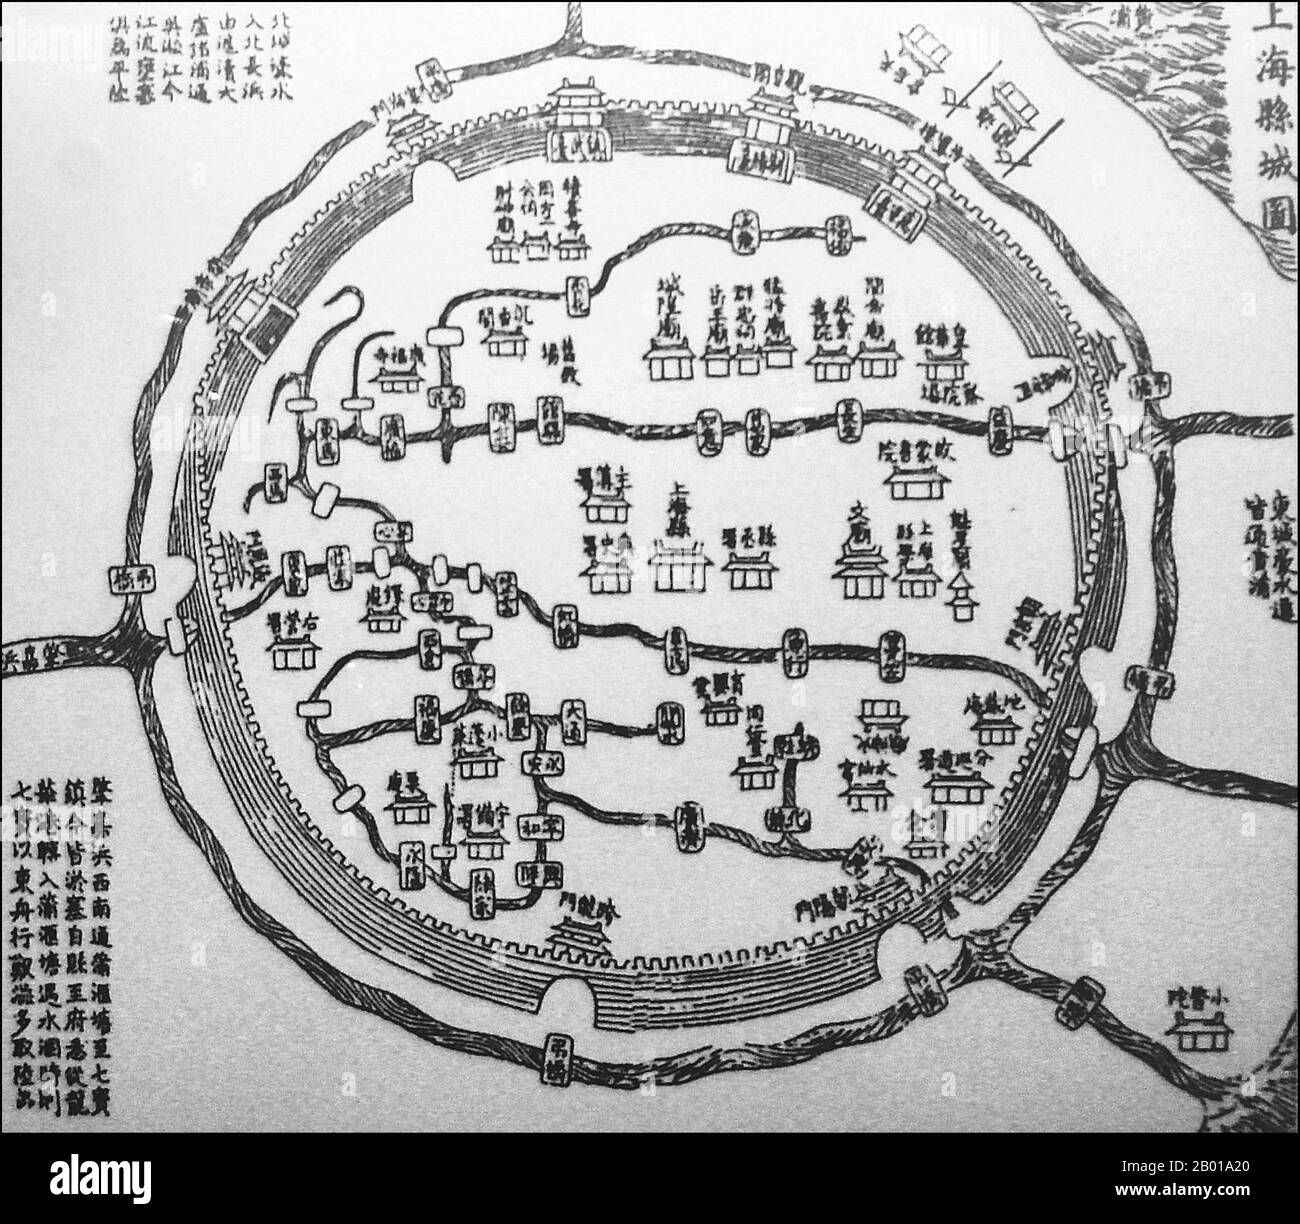 Cina: Una mappa cinese della città vecchia di Shanghai, 1553. La Città Vecchia di Shanghai (Shànghăi Gùchéng) si riferisce alla zona più antica di Shanghai, più spesso chiamata semplicemente Nanshi, 'Città del Sud', giacendo a sud dei vecchi insediamenti internazionali. Ha una forma circolare ed era circondato da un muro difensivo. Le caratteristiche notevoli includono il Tempio del Dio della Citta' che si trova nel centro della Citta' Vecchia ed e' collegato al Giardino Yuyuan. Oggi, la maggior parte delle mura sono state sostituite da ampi viali circolari, il Renmin Lu a nord e Zhonghua Lu a sud. Foto Stock